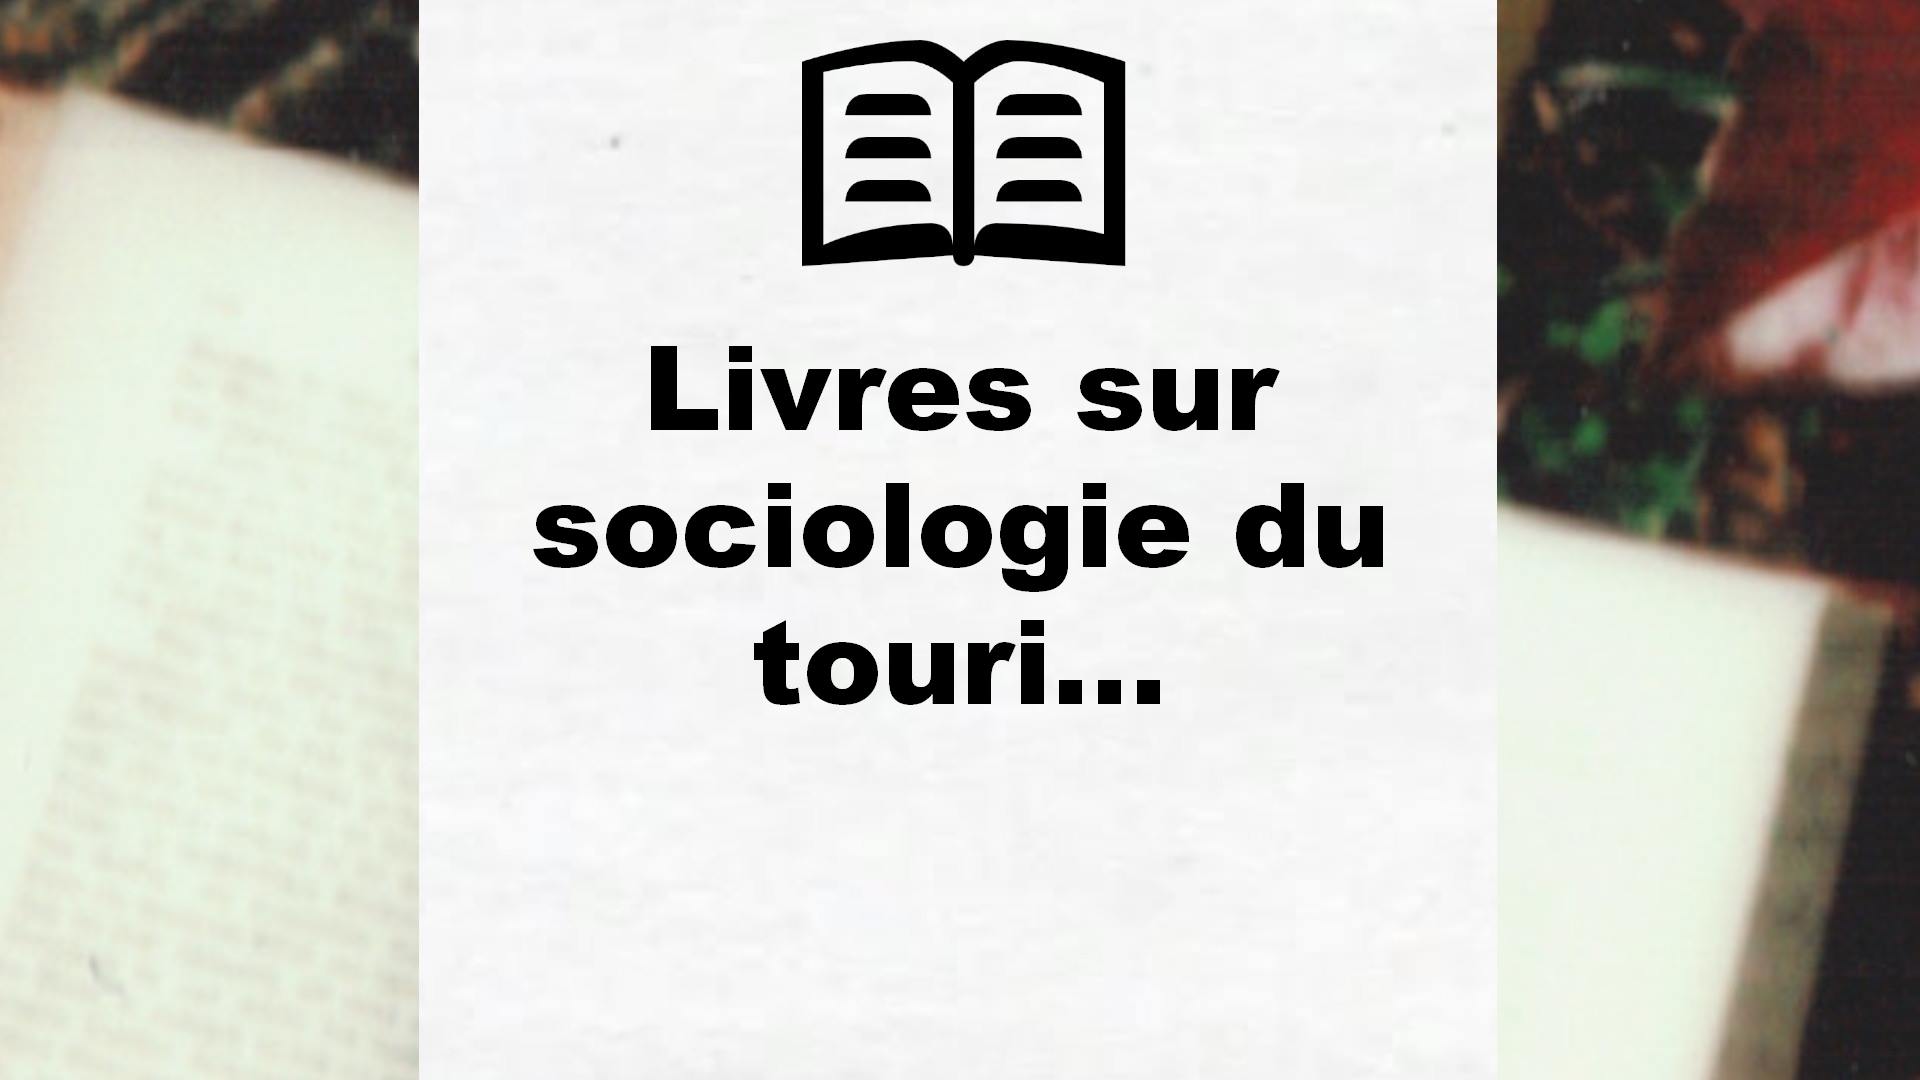 Livres sur sociologie du tourisme